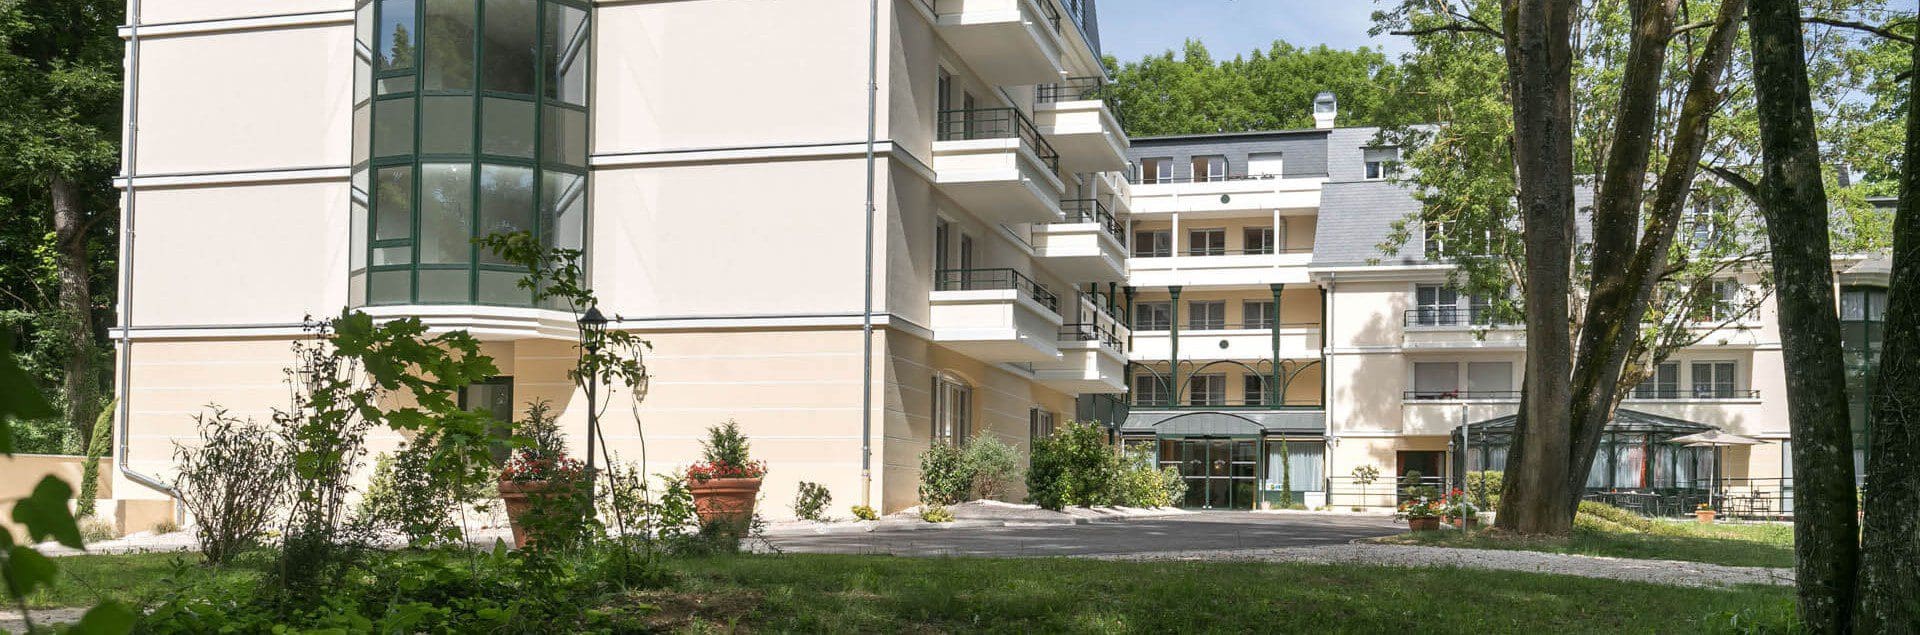 Solution d'hébergement pour séniors, Résidence senior Dijon Villa Médicis